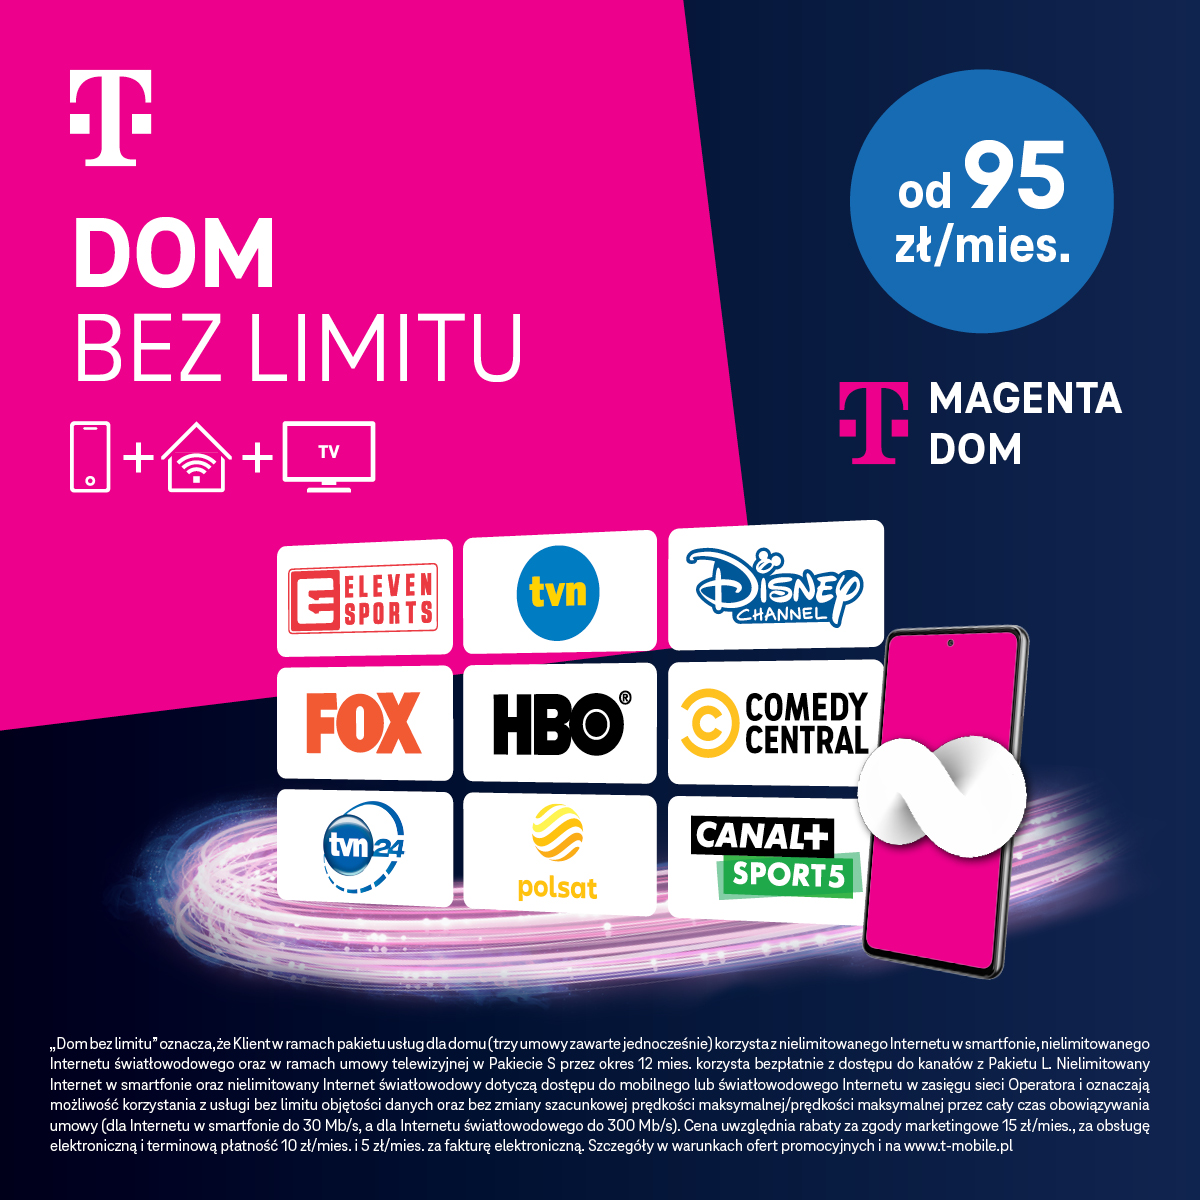 T-Mobile, T-Mobile DOM BEZ LIMITU!